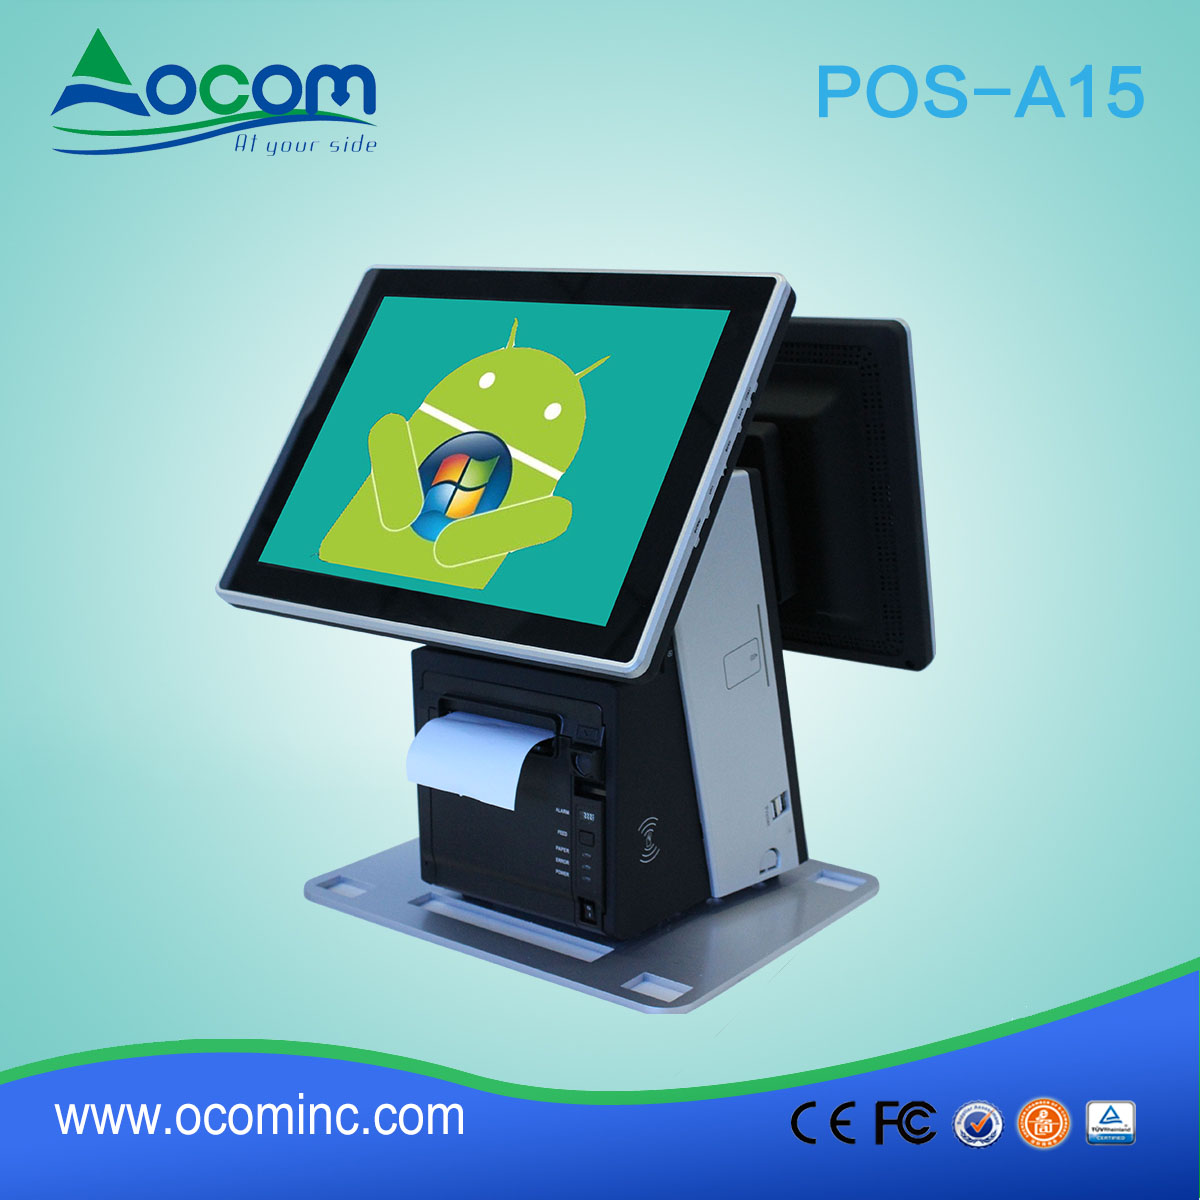 POS-A15 wysokiej jakości podwójny ekran dotykowy urządzenia POS System w Chinach